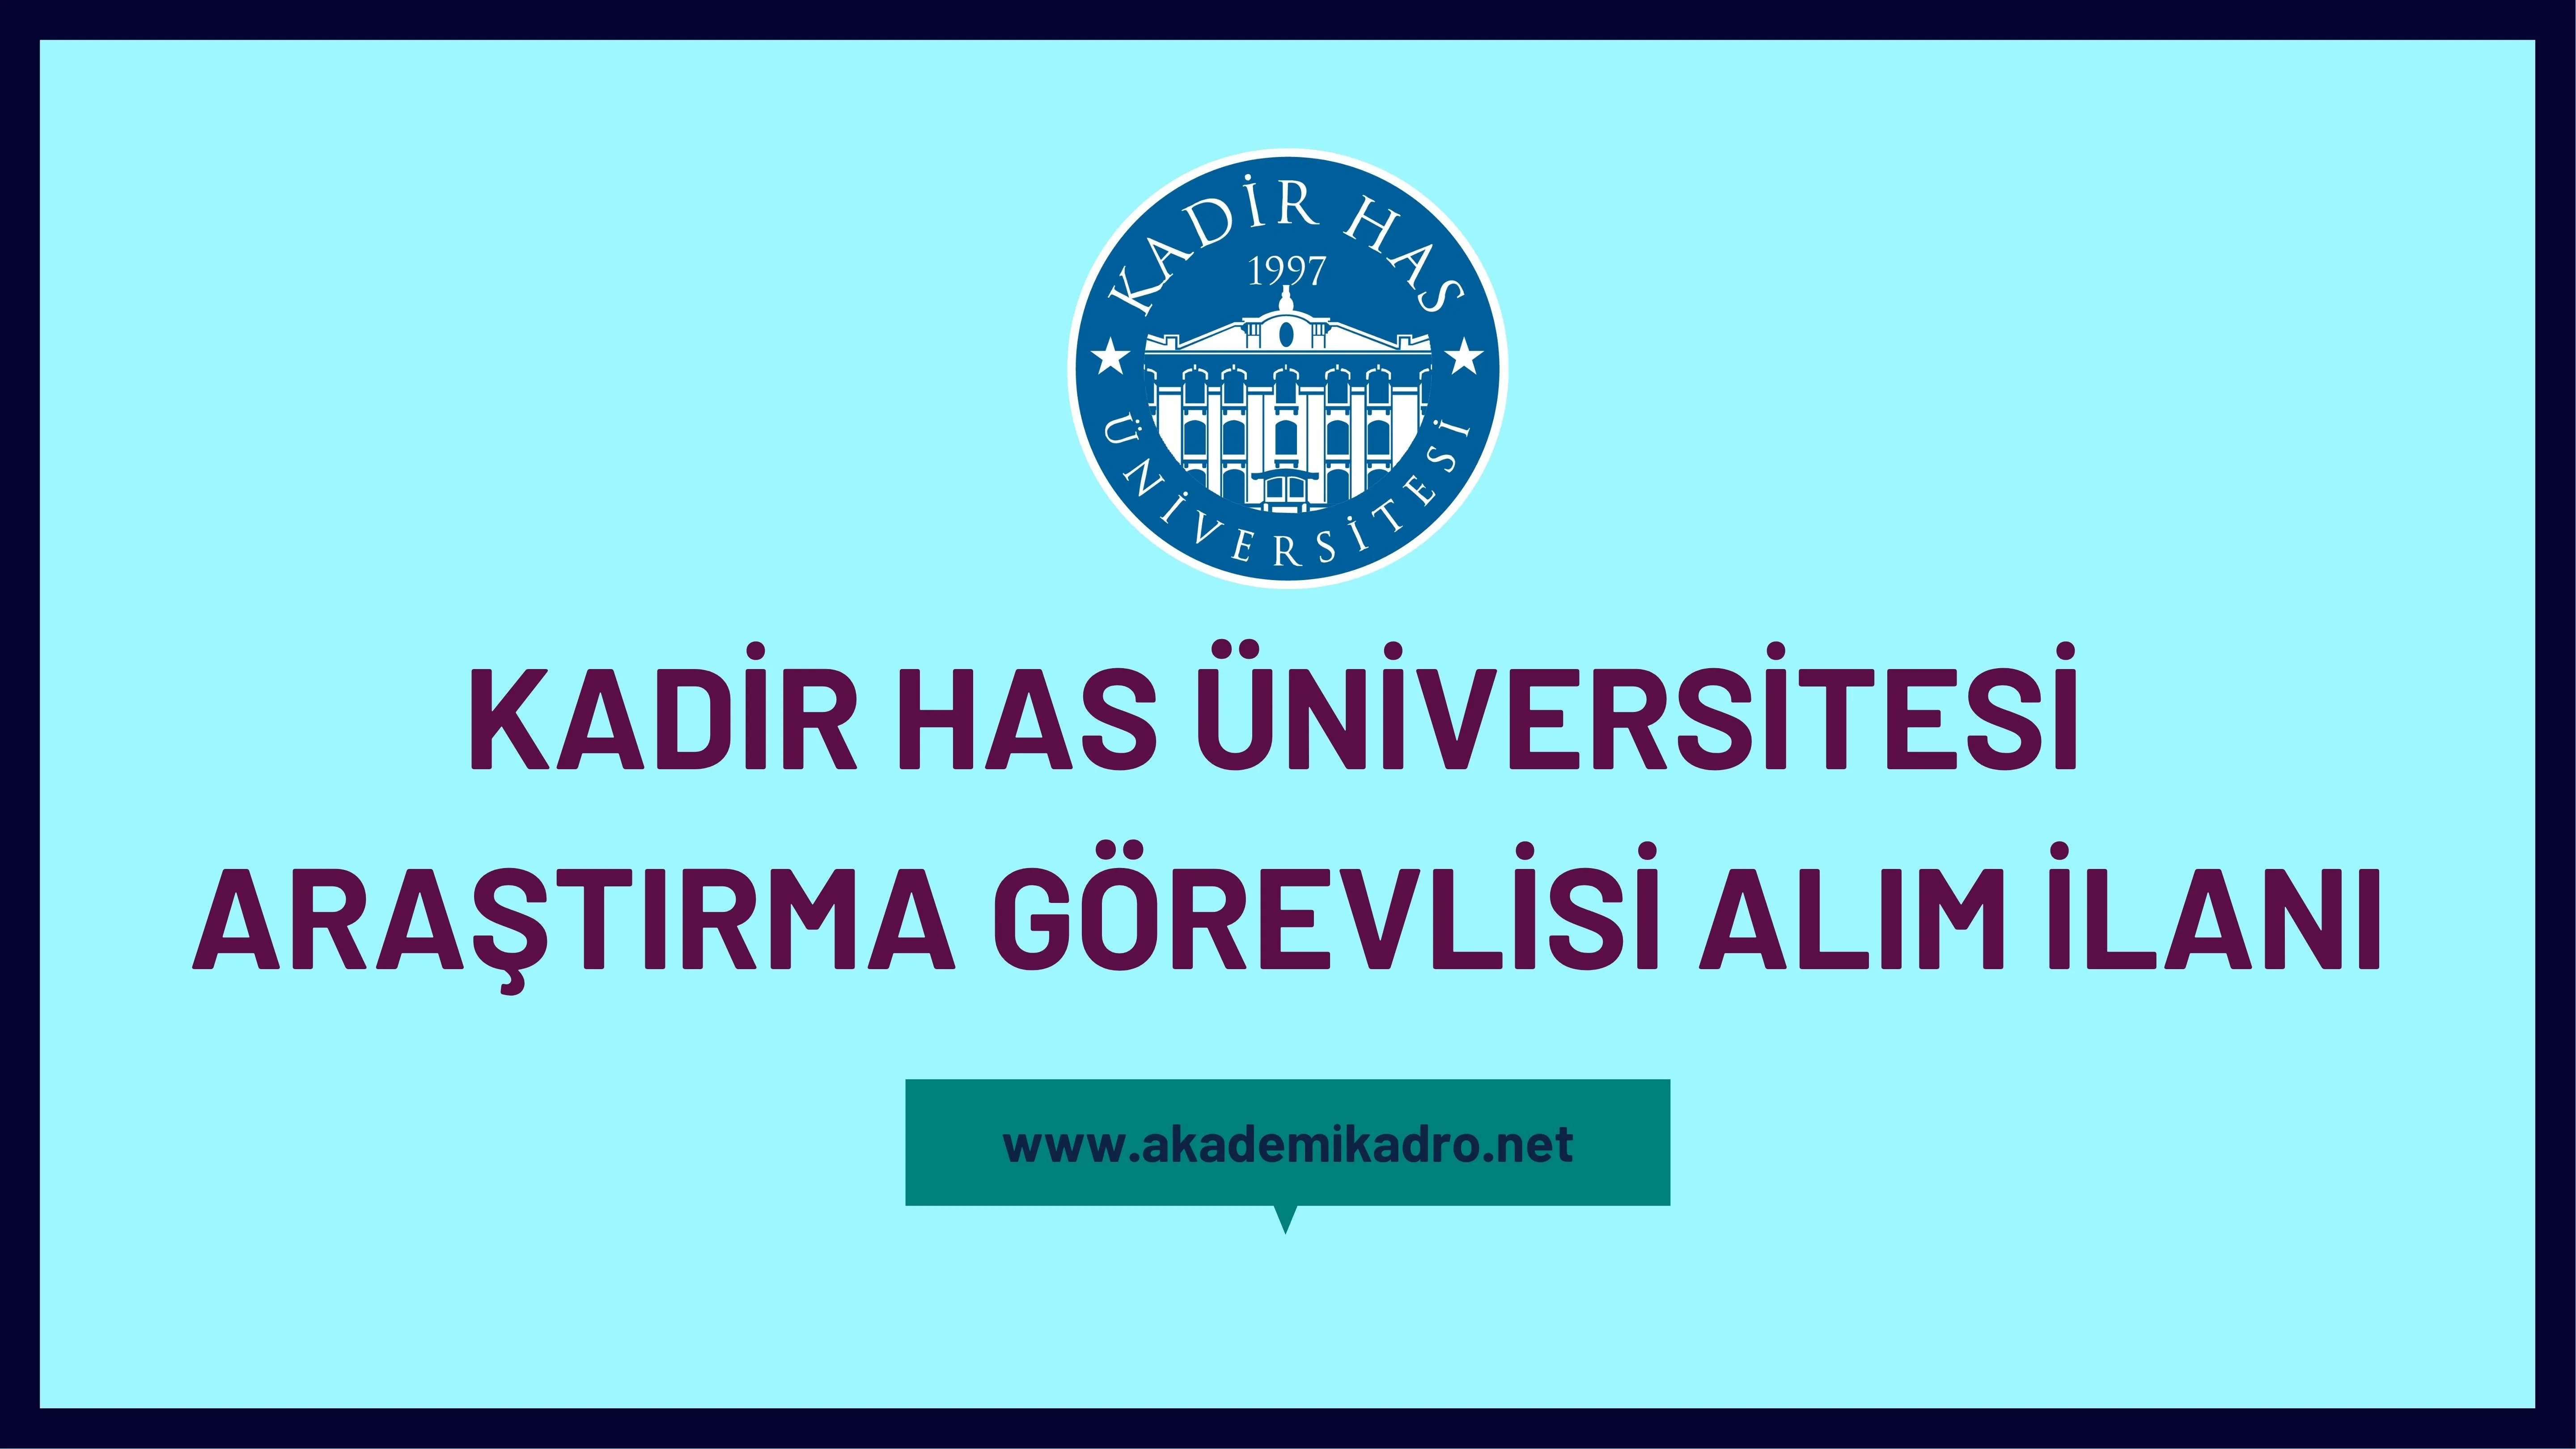 Kadir Has Üniversitesi Araştırma görevlisi alacak.